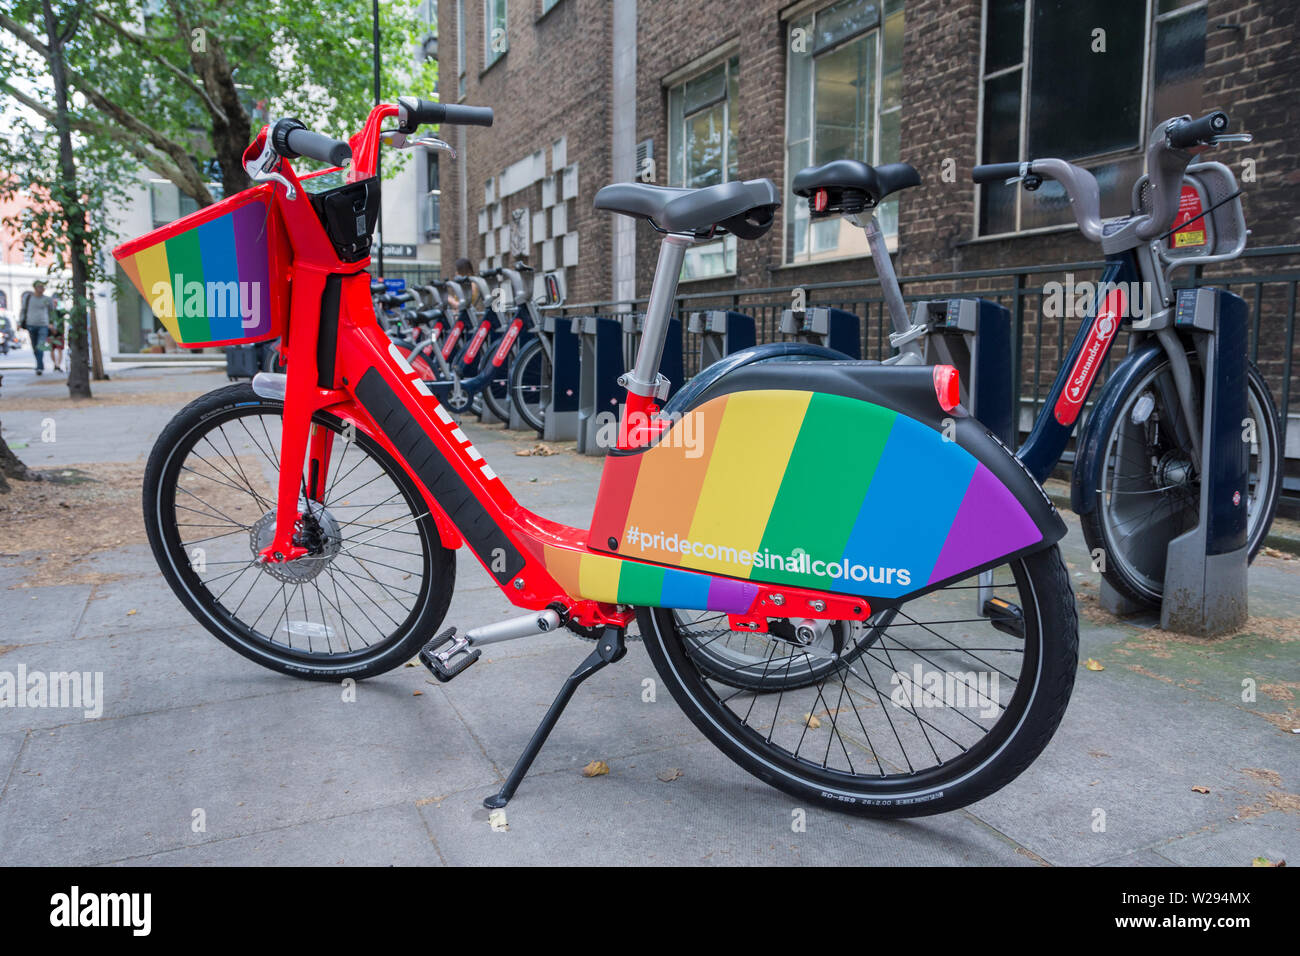 gay-pride-regenbogen-flagge-farben-auf-einem-der-uber-gps-verfolgt-elektrische-pedal-springen-bikes-unterstutzen-w294mx.jpg